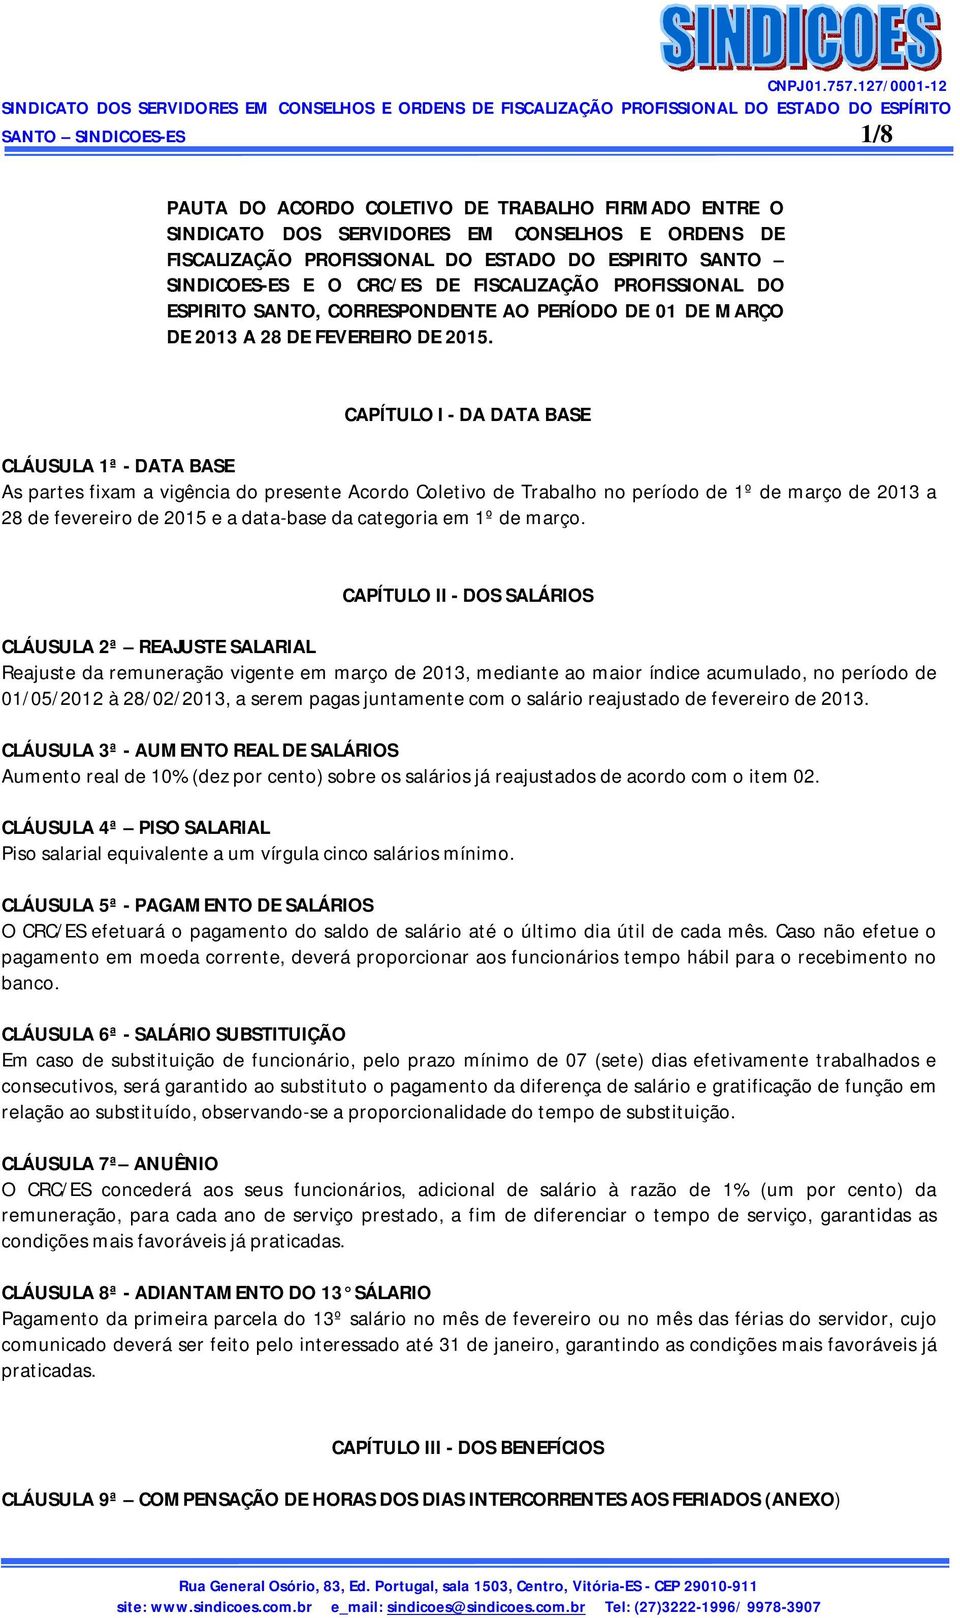 CAPÍTULO I - DA DATA BASE CLÁUSULA 1ª - DATA BASE As partes fixam a vigência do presente Acordo Coletivo de Trabalho no período de 1º de março de 2013 a 28 de fevereiro de 2015 e a data-base da